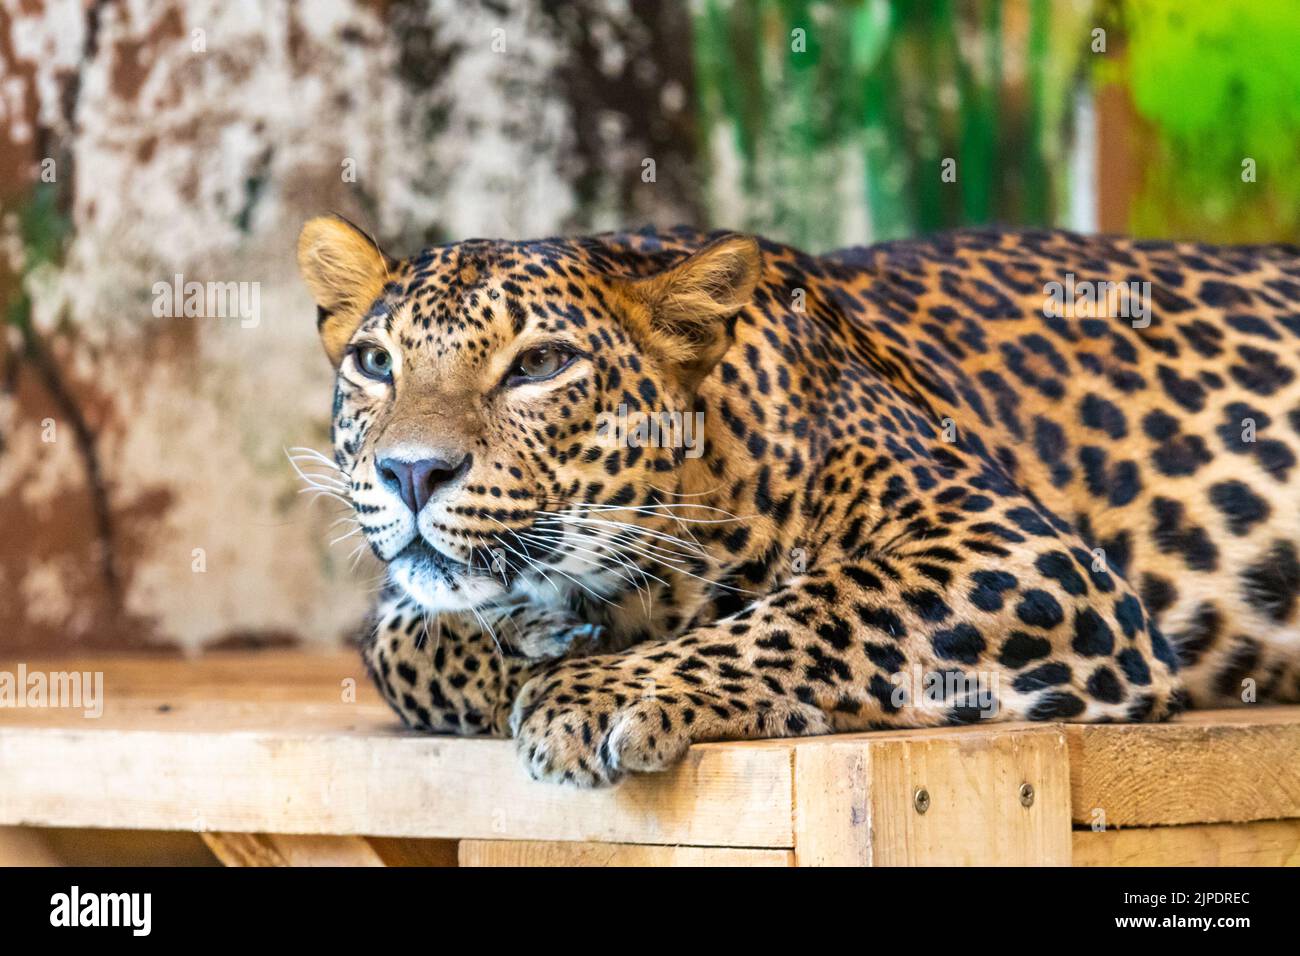 Le léopard (nom latin Panthera pardus kotiya) repose sur le bureau en bois. Prédateur carnivore, vivant naturellement au Sri Lanka. Détail d'un magnifique Banque D'Images